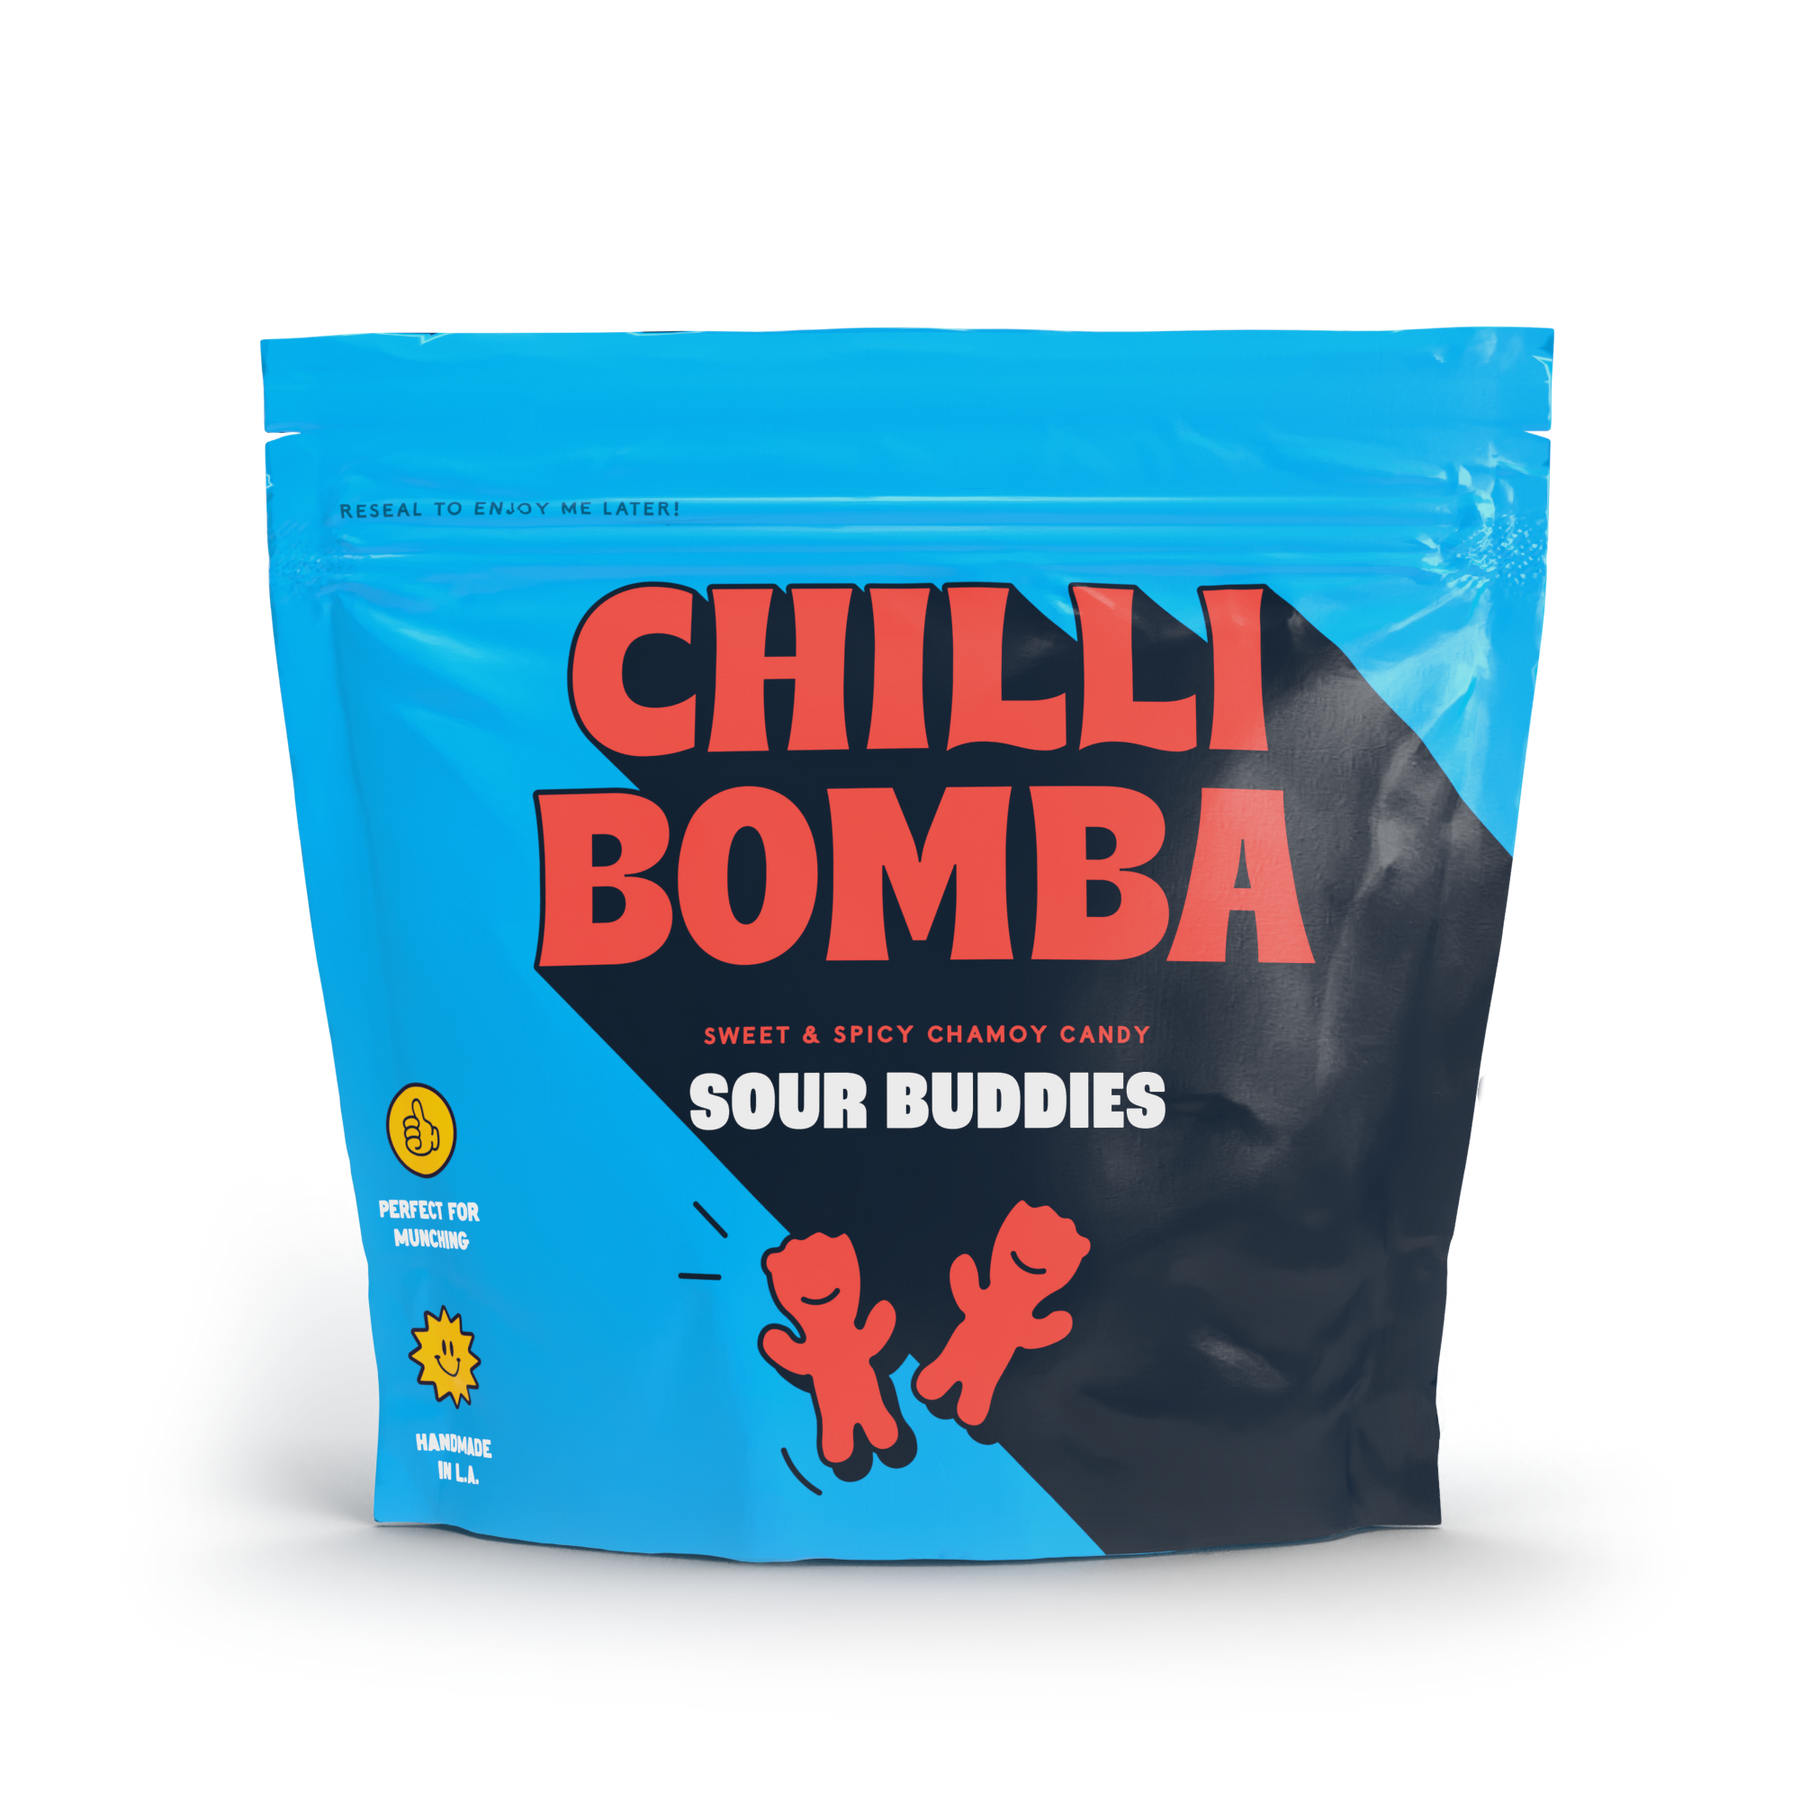 Chilli Bomba Sour Buddies Chamoy Candy - 8oz